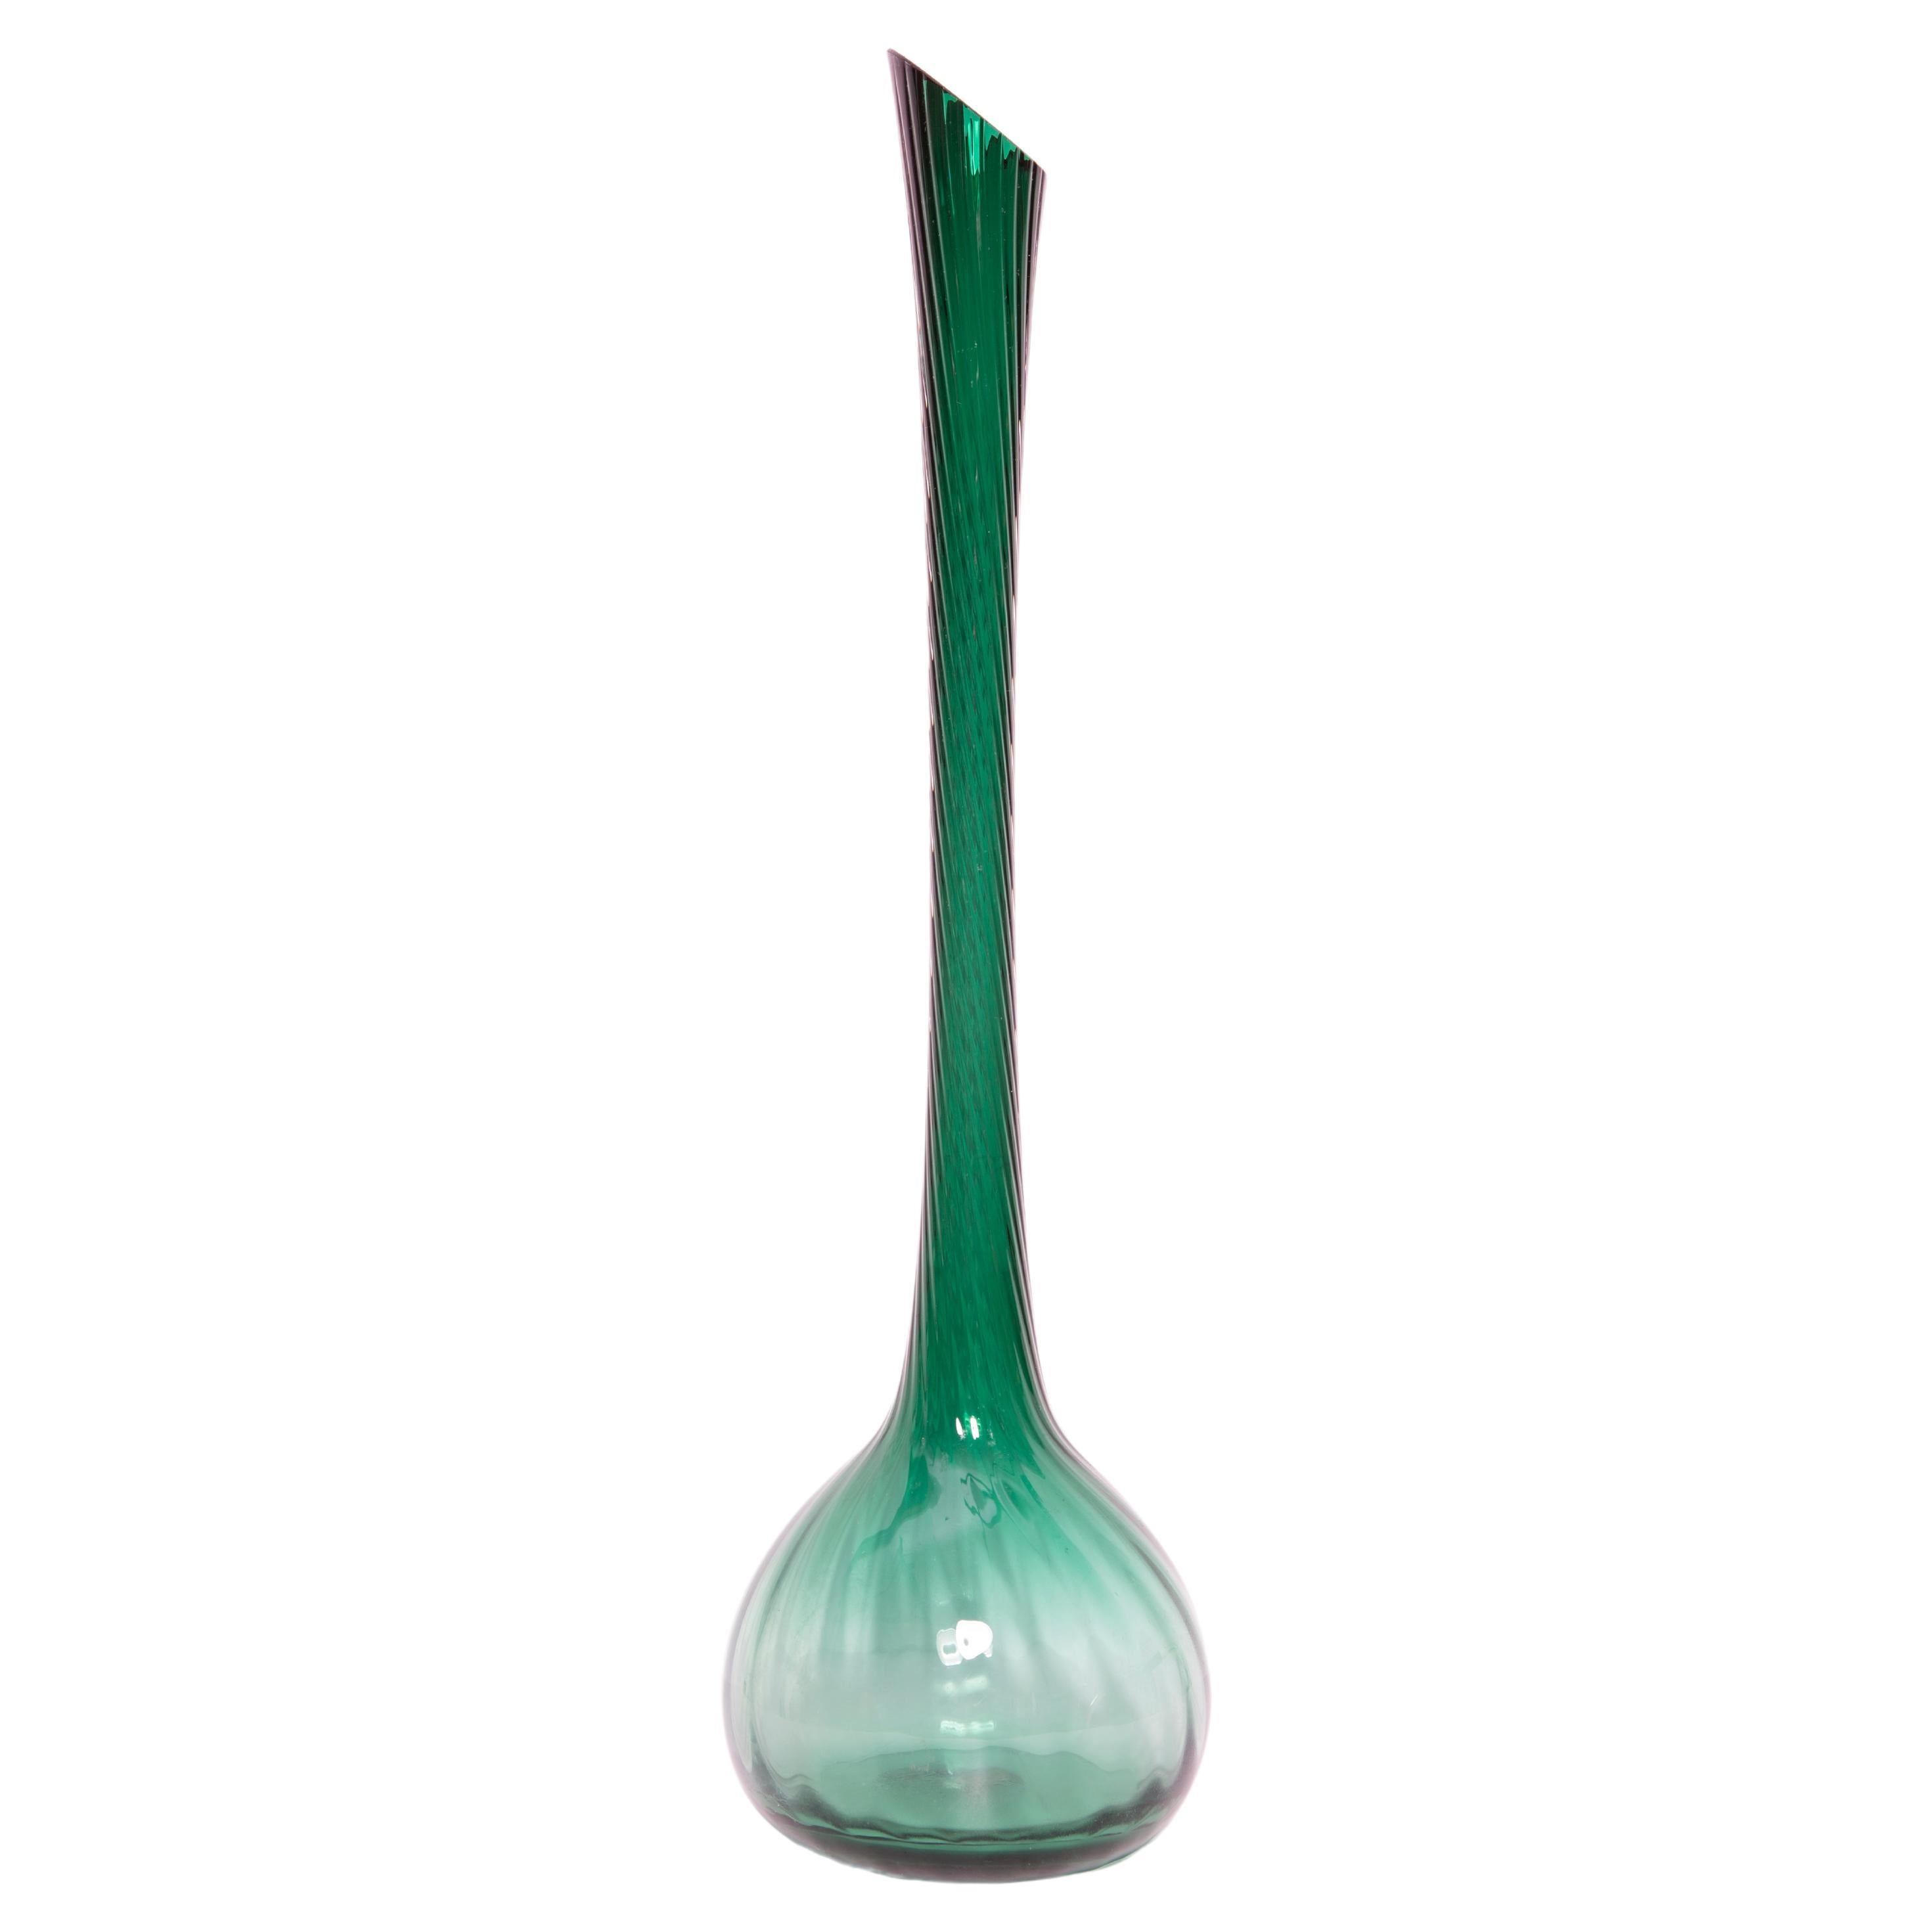 Midcentury Tall Green Vase, Europe, 1960s